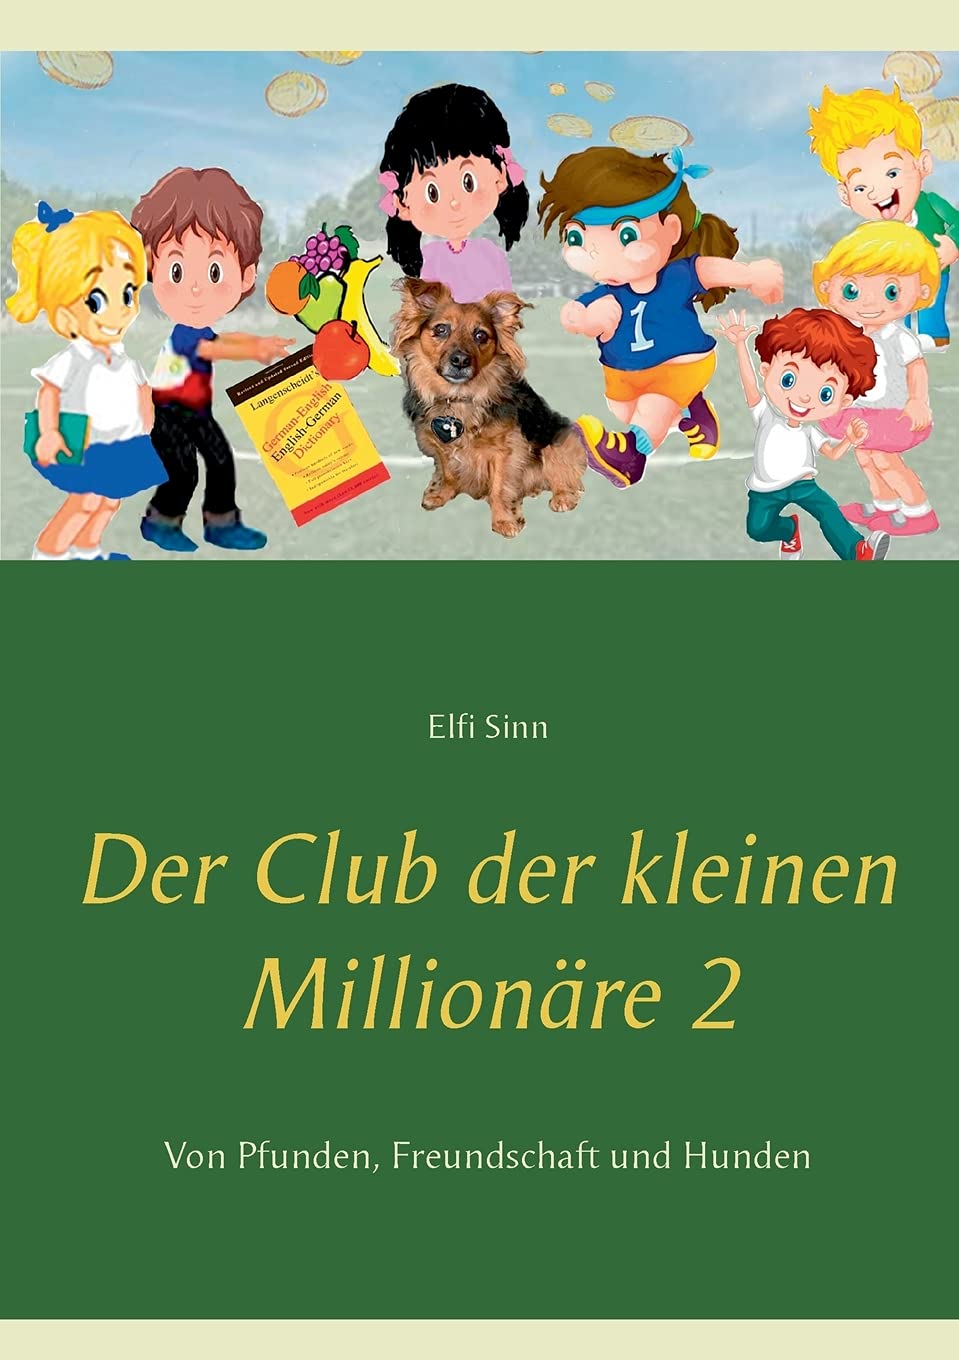 Der Club der kleinen Millionäre 2